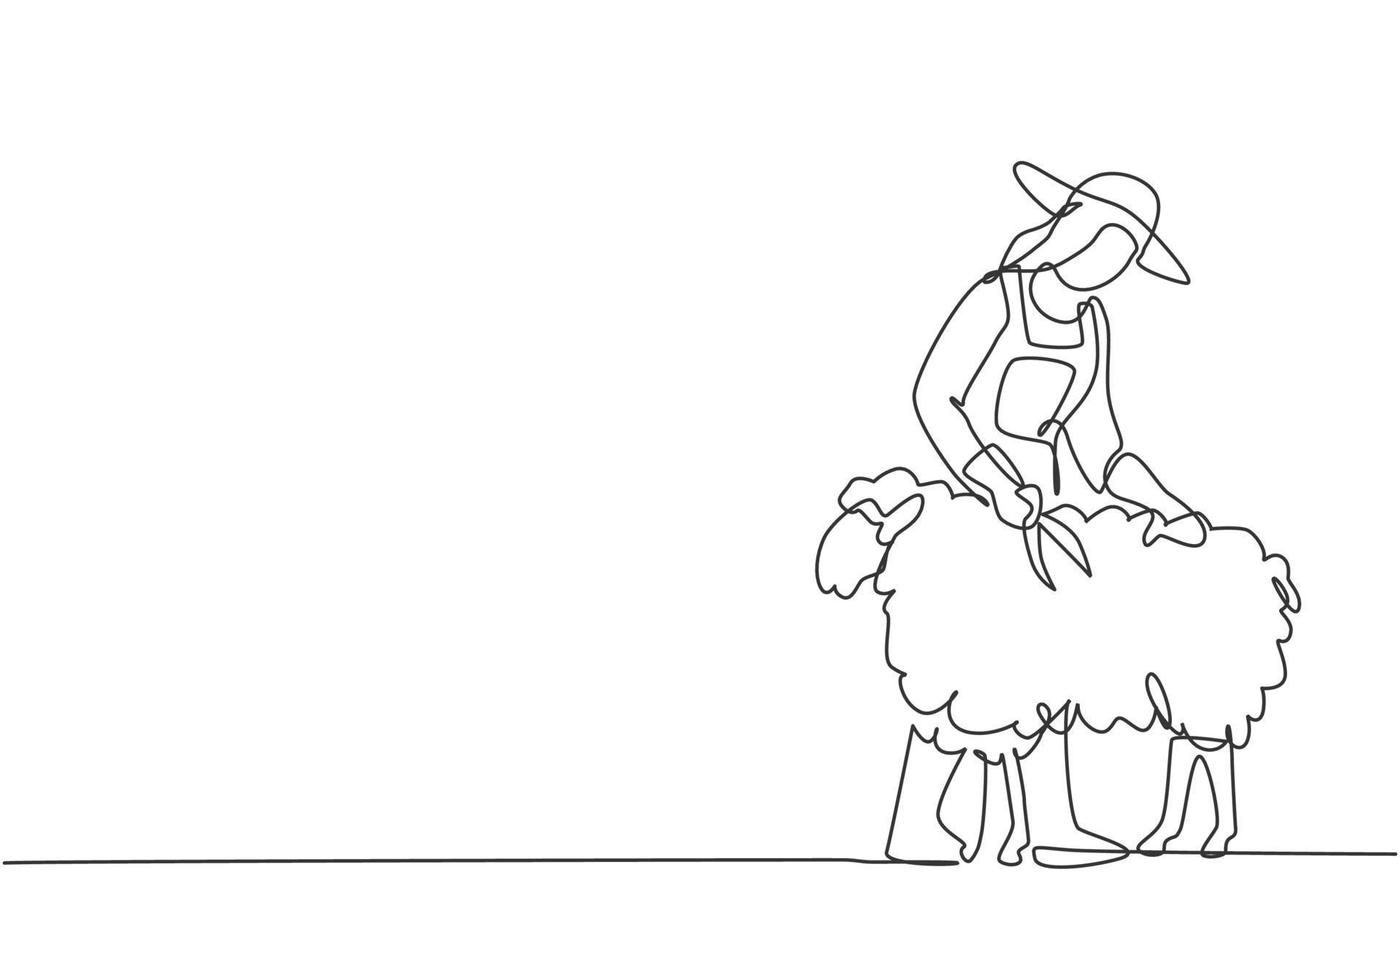 El dibujo de una sola línea de una joven agricultora estaba cortando cuidadosamente el vellón con unas tijeras. concepto mínimo de desafío agrícola. Ilustración de vector gráfico de diseño de dibujo de línea continua moderna.